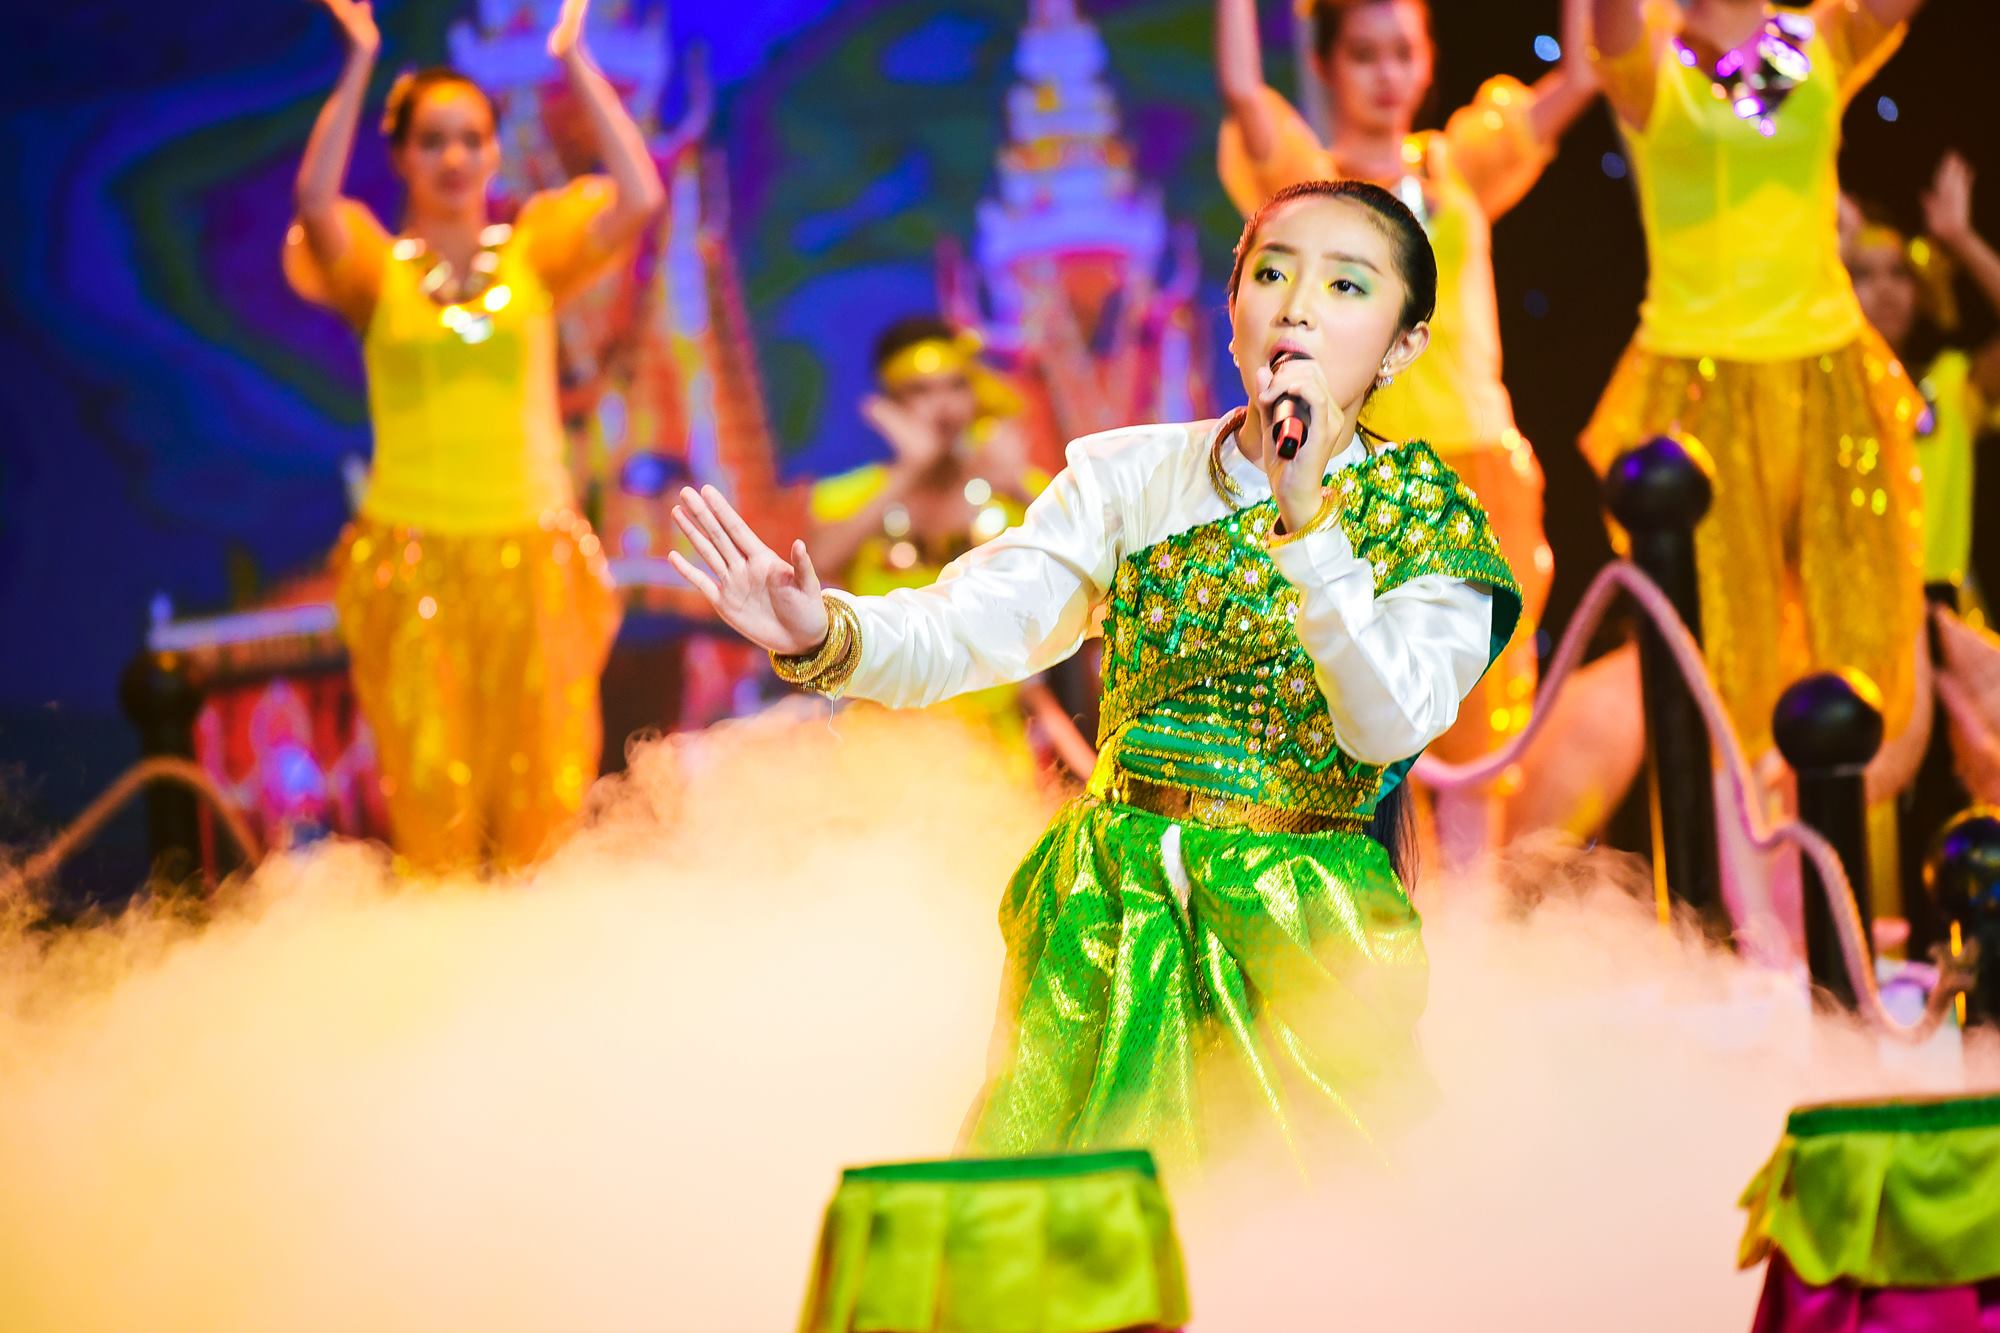 Trong chủ đề Mùa lễ hội , con gái út 11 tuổi của nghệ sĩ Cẩm Hiền khiến khán giả ngẩn ngơ trước vẻ đẹp của thiếu nữ Khơ - Me miền Tây Nam Bộ. 